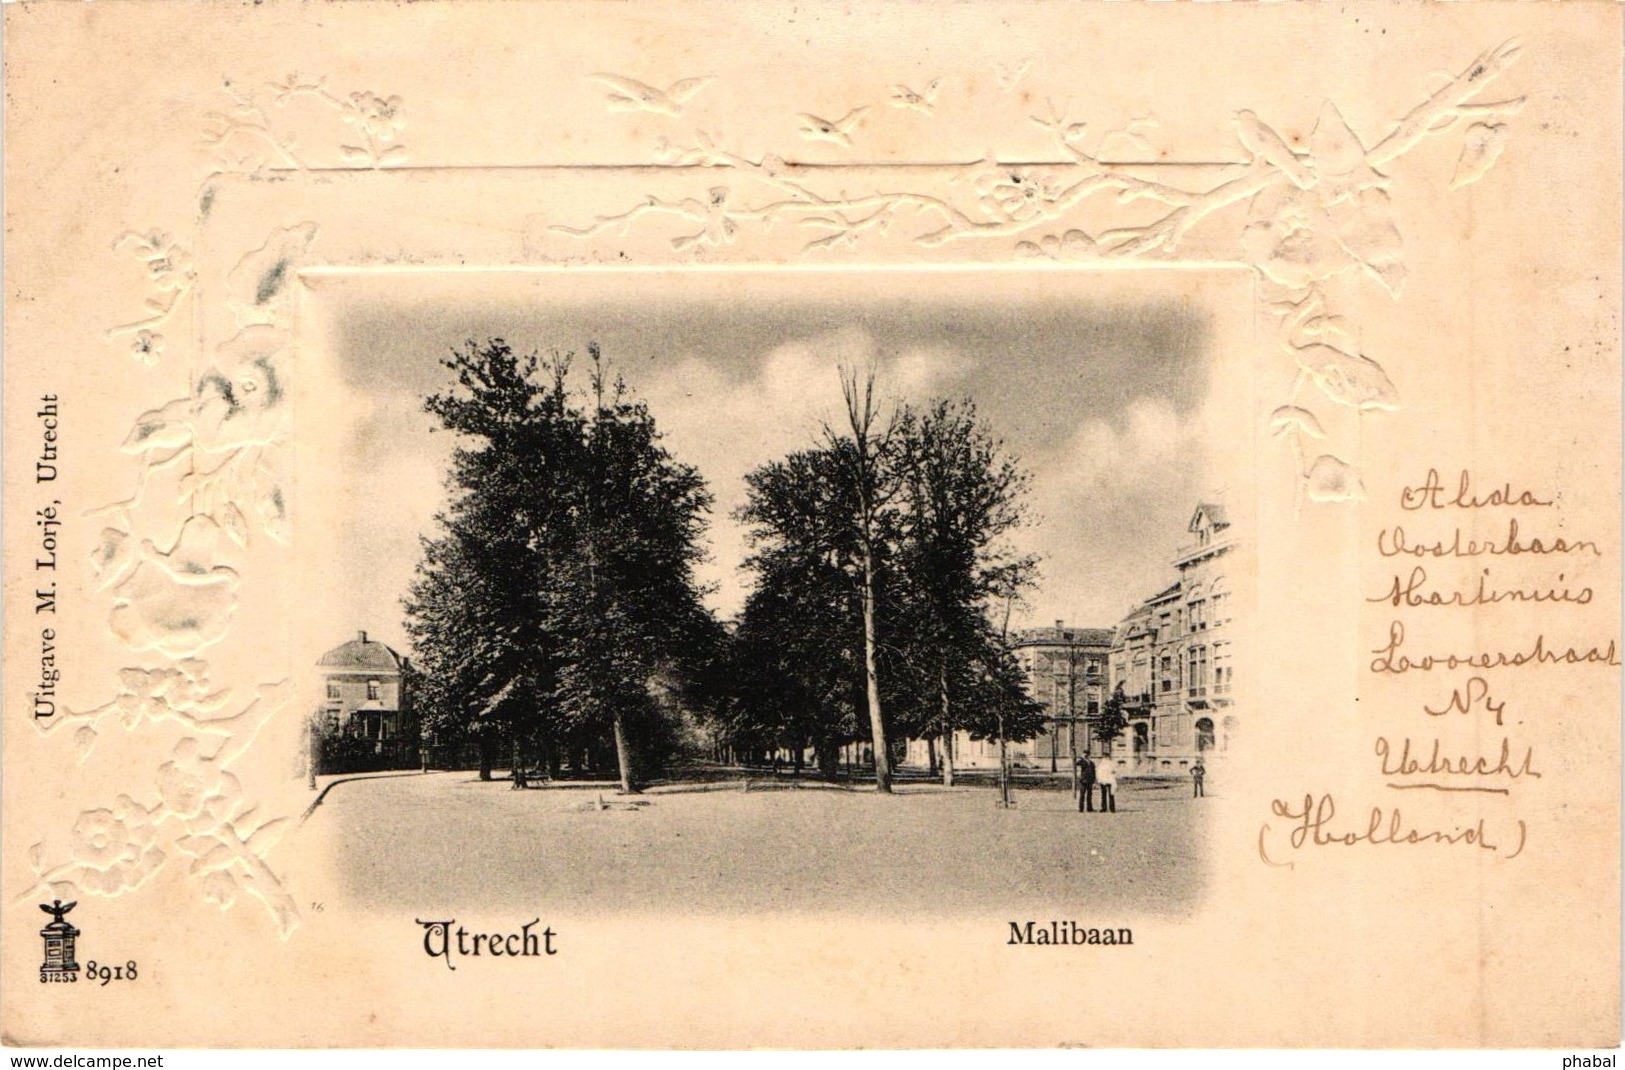 The Netherlands, Utrecht, Malibaan, Old Postcard 1902 - Utrecht